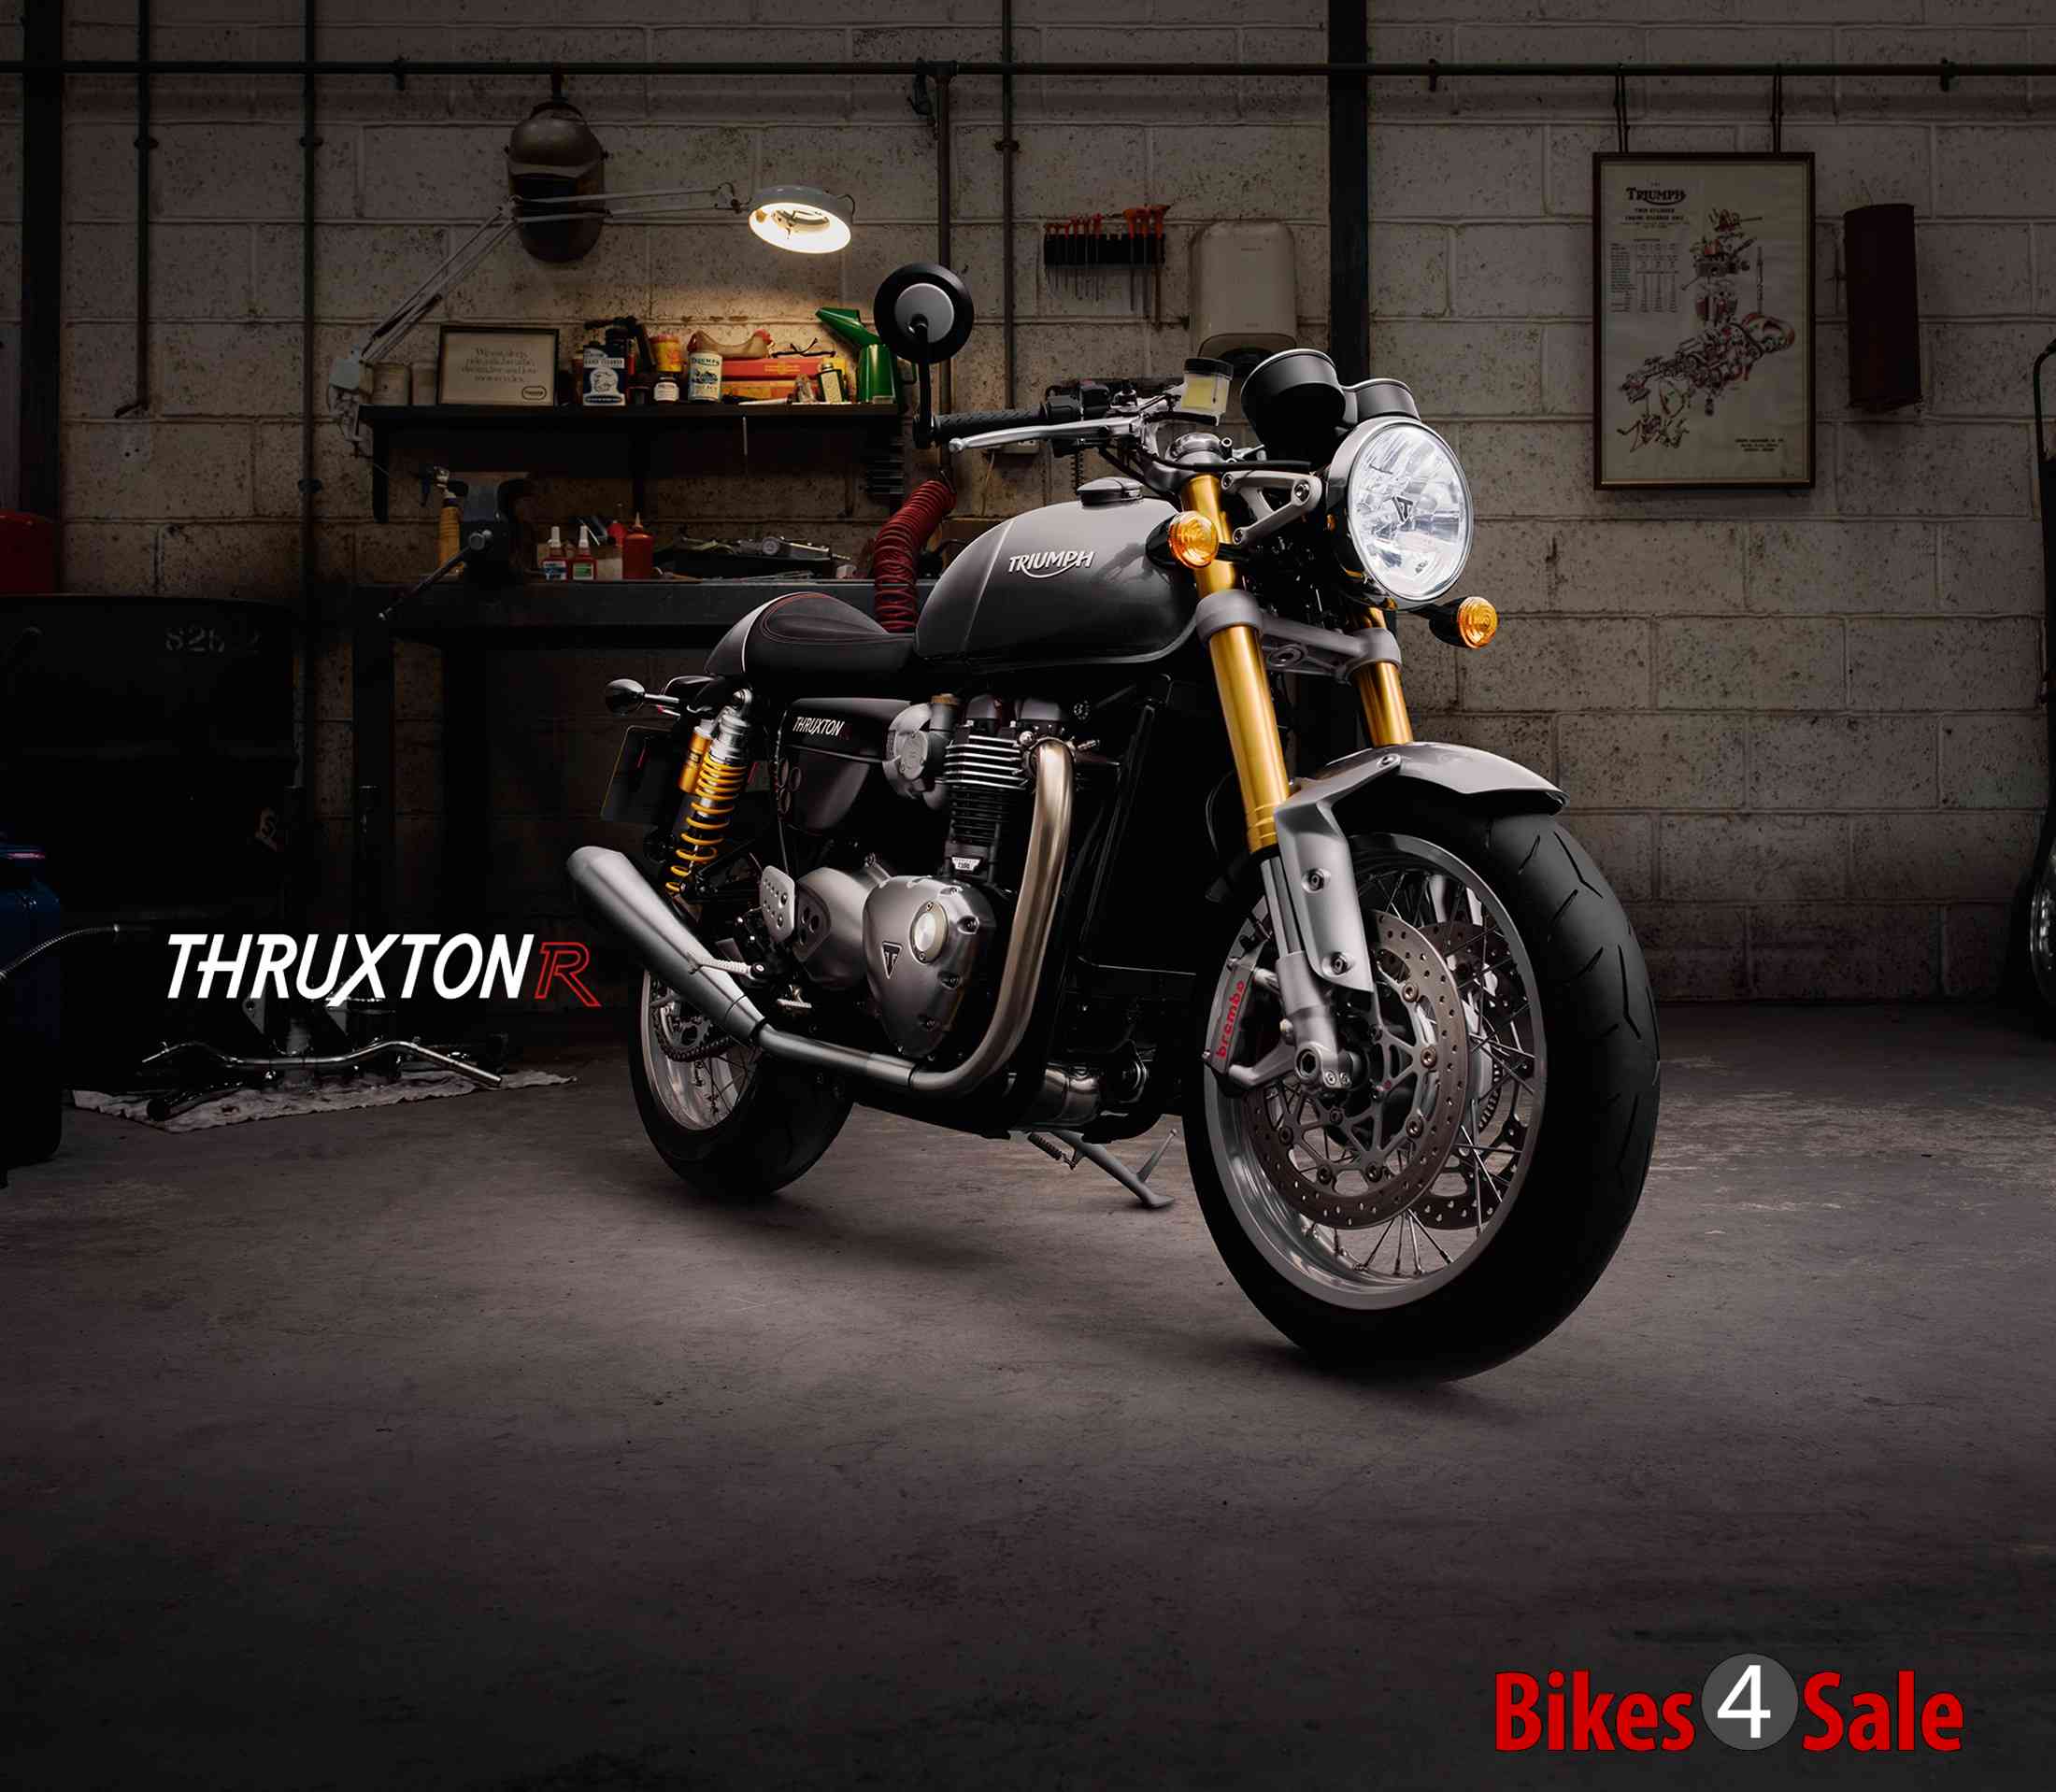 Triumph Thruxton R